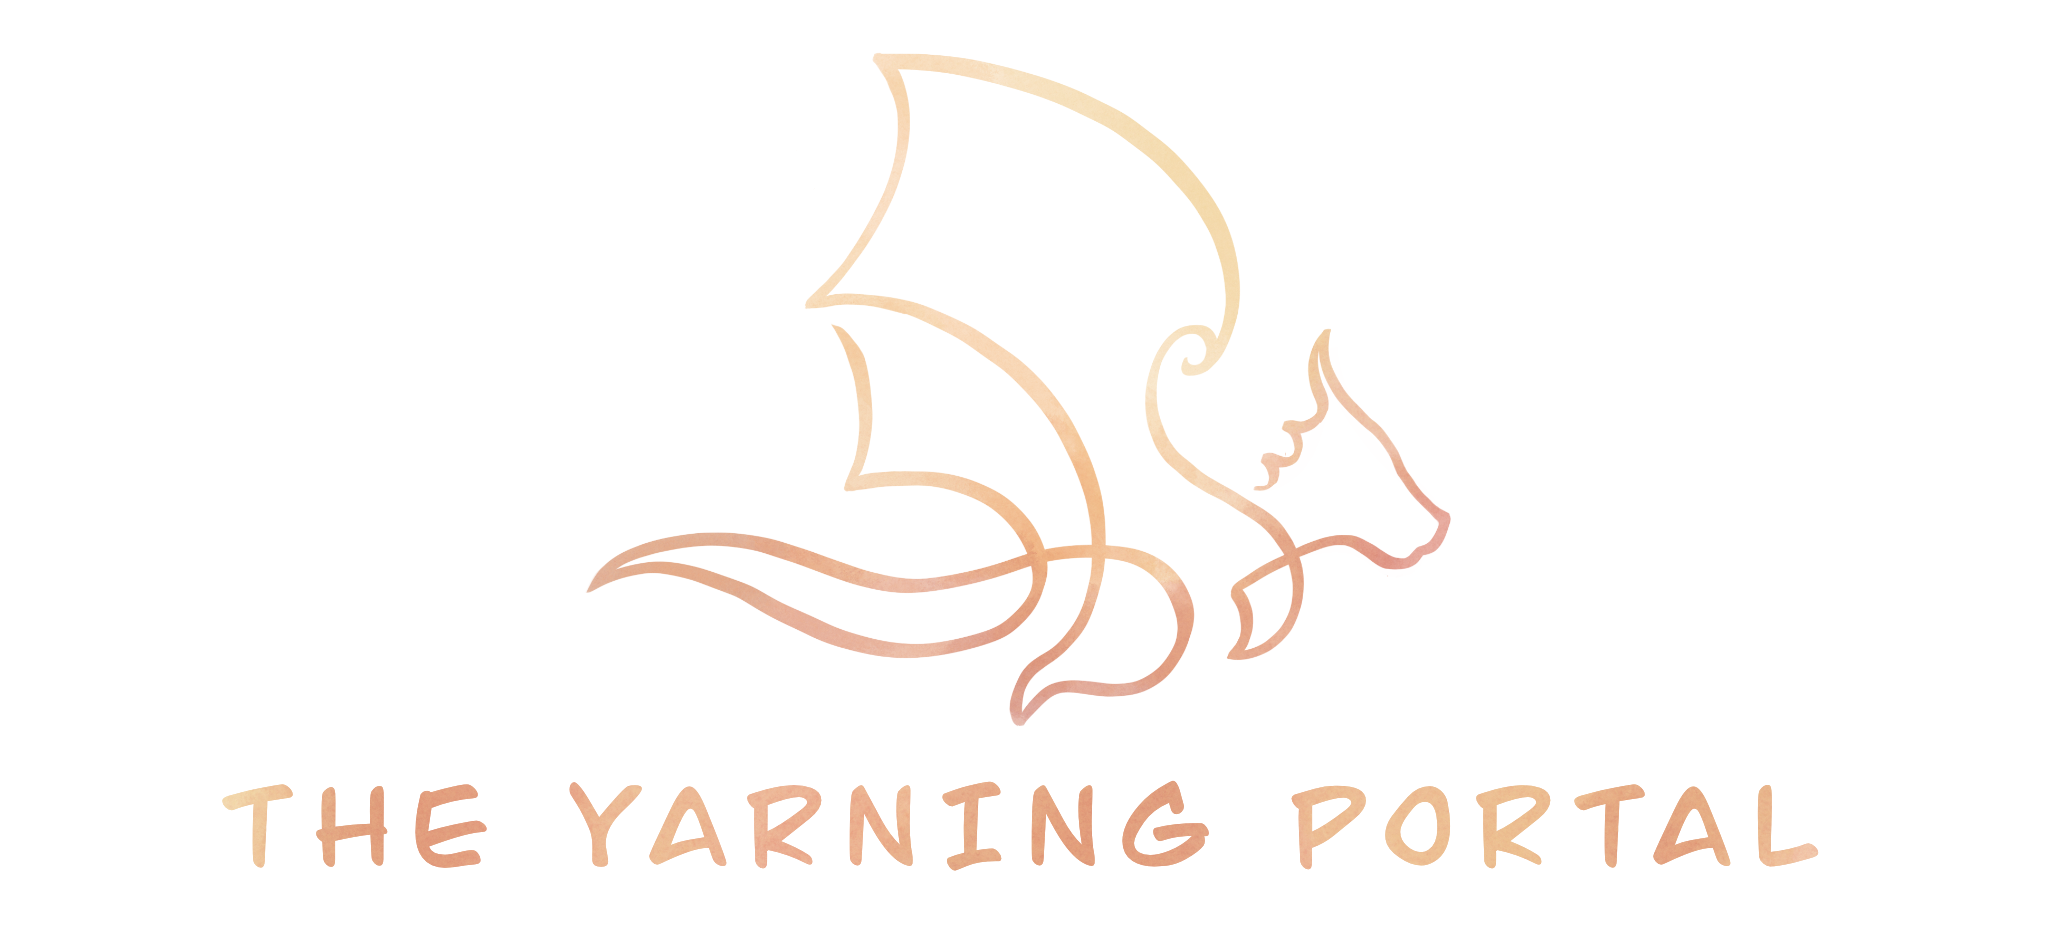 The Yarning Portal